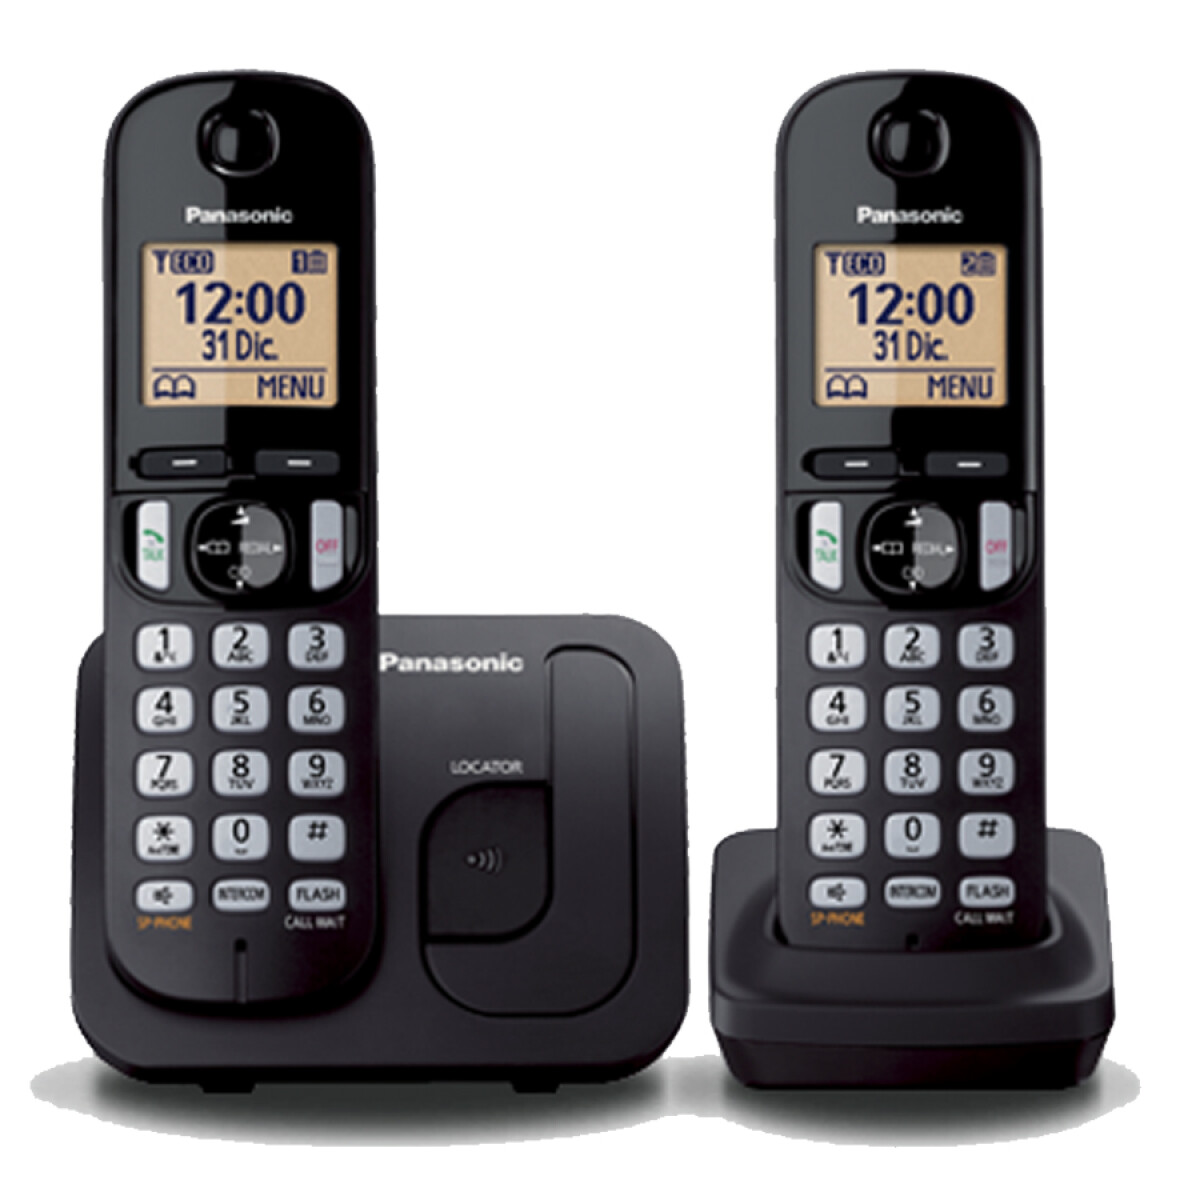 Telefono Inalambrico Panasonic Doble Base y Captor TGC212 - 001 